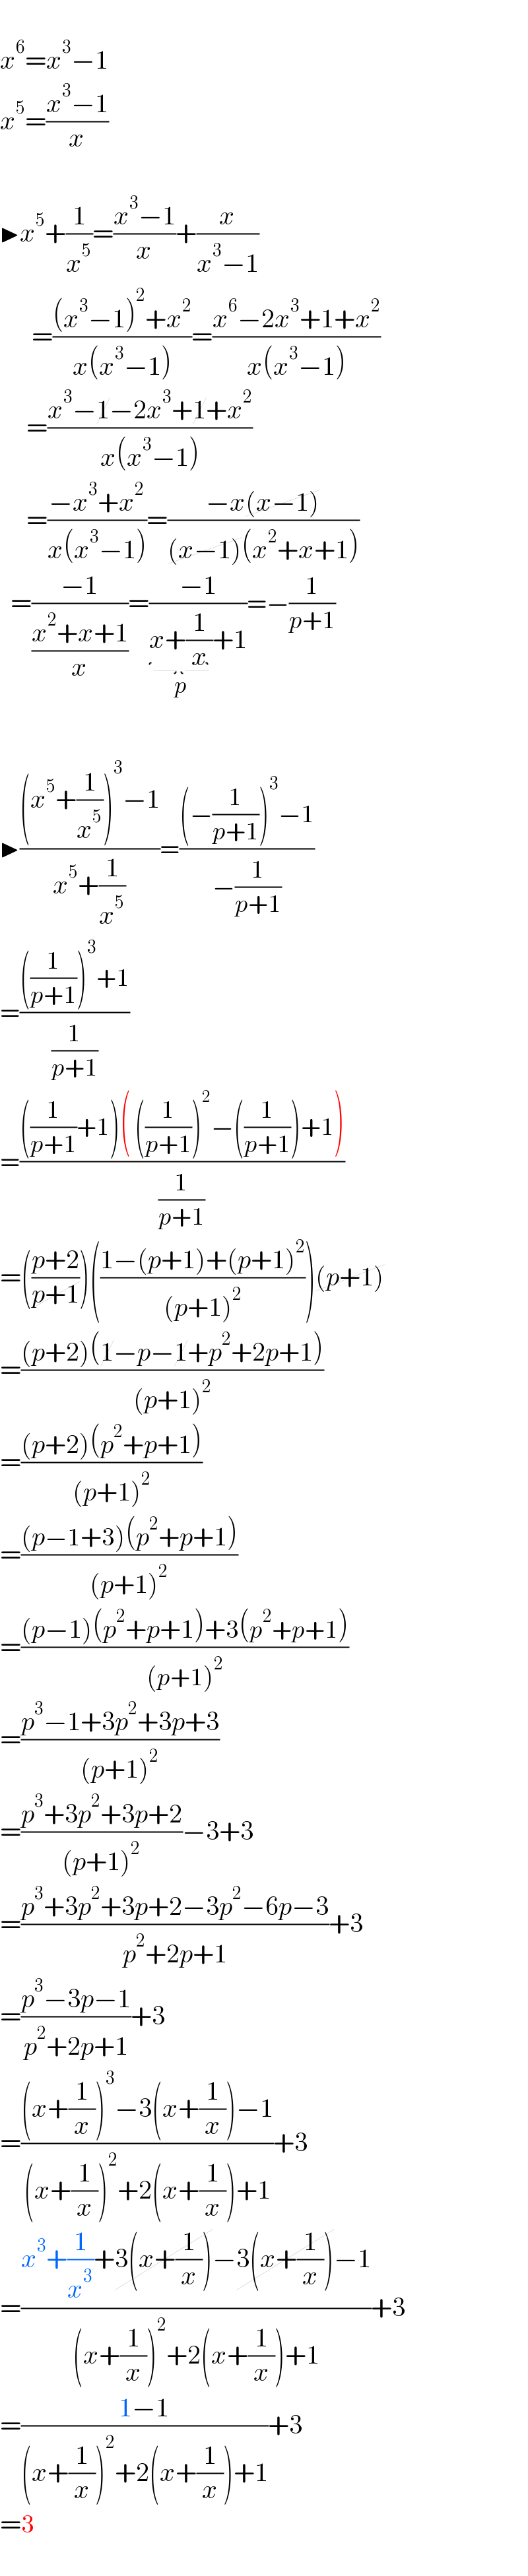   x^6 =x^3 −1  x^5 =((x^3 −1)/x)    ▶x^5 +(1/x^5 )=((x^3 −1)/x)+(x/(x^3 −1))        =(((x^3 −1)^2 +x^2 )/(x(x^3 −1)))=((x^6 −2x^3 +1+x^2 )/(x(x^3 −1)))       =((x^3 −1−2x^3 +1+x^2 )/(x(x^3 −1)))       =((−x^3 +x^2 )/(x(x^3 −1)))=((−x(x−1))/((x−1)(x^2 +x+1)))    =((−1)/((x^2 +x+1)/x))=((−1)/(x+(1/x)_() +1))=−(1/(p+1))    ▶(((x^5 +(1/x^5 ))^3 −1)/(x^5 +(1/x^5 )))=(((−(1/(p+1)))^3 −1)/(−(1/(p+1))))  =((((1/(p+1)))^3 +1)/(1/(p+1)))  =((((1/(p+1))+1)( ((1/(p+1)))^2 −((1/(p+1)))+1))/(1/(p+1)))  =(((p+2)/(p+1)))(((1−(p+1)+(p+1)^2 )/((p+1)^2 )))(p+1)  =(((p+2)(1−p−1+p^2 +2p+1))/((p+1)^2 ))  =(((p+2)(p^2 +p+1))/((p+1)^2 ))  =(((p−1+3)(p^2 +p+1))/((p+1)^2 ))  =(((p−1)(p^2 +p+1)+3(p^2 +p+1))/((p+1)^2 ))  =((p^3 −1+3p^2 +3p+3)/((p+1)^2 ))  =((p^3 +3p^2 +3p+2)/((p+1)^2 ))−3+3  =((p^3 +3p^2 +3p+2−3p^2 −6p−3)/(p^2 +2p+1))+3  =((p^3 −3p−1)/(p^2 +2p+1))+3  =(((x+(1/x))^3 −3(x+(1/x))−1)/((x+(1/x))^2 +2(x+(1/x))+1))+3  =((x^3 +(1/x^3 )+3(x+(1/x))−3(x+(1/x))−1)/((x+(1/x))^2 +2(x+(1/x))+1))+3  =((1−1)/((x+(1/x))^2 +2(x+(1/x))+1))+3  =3    